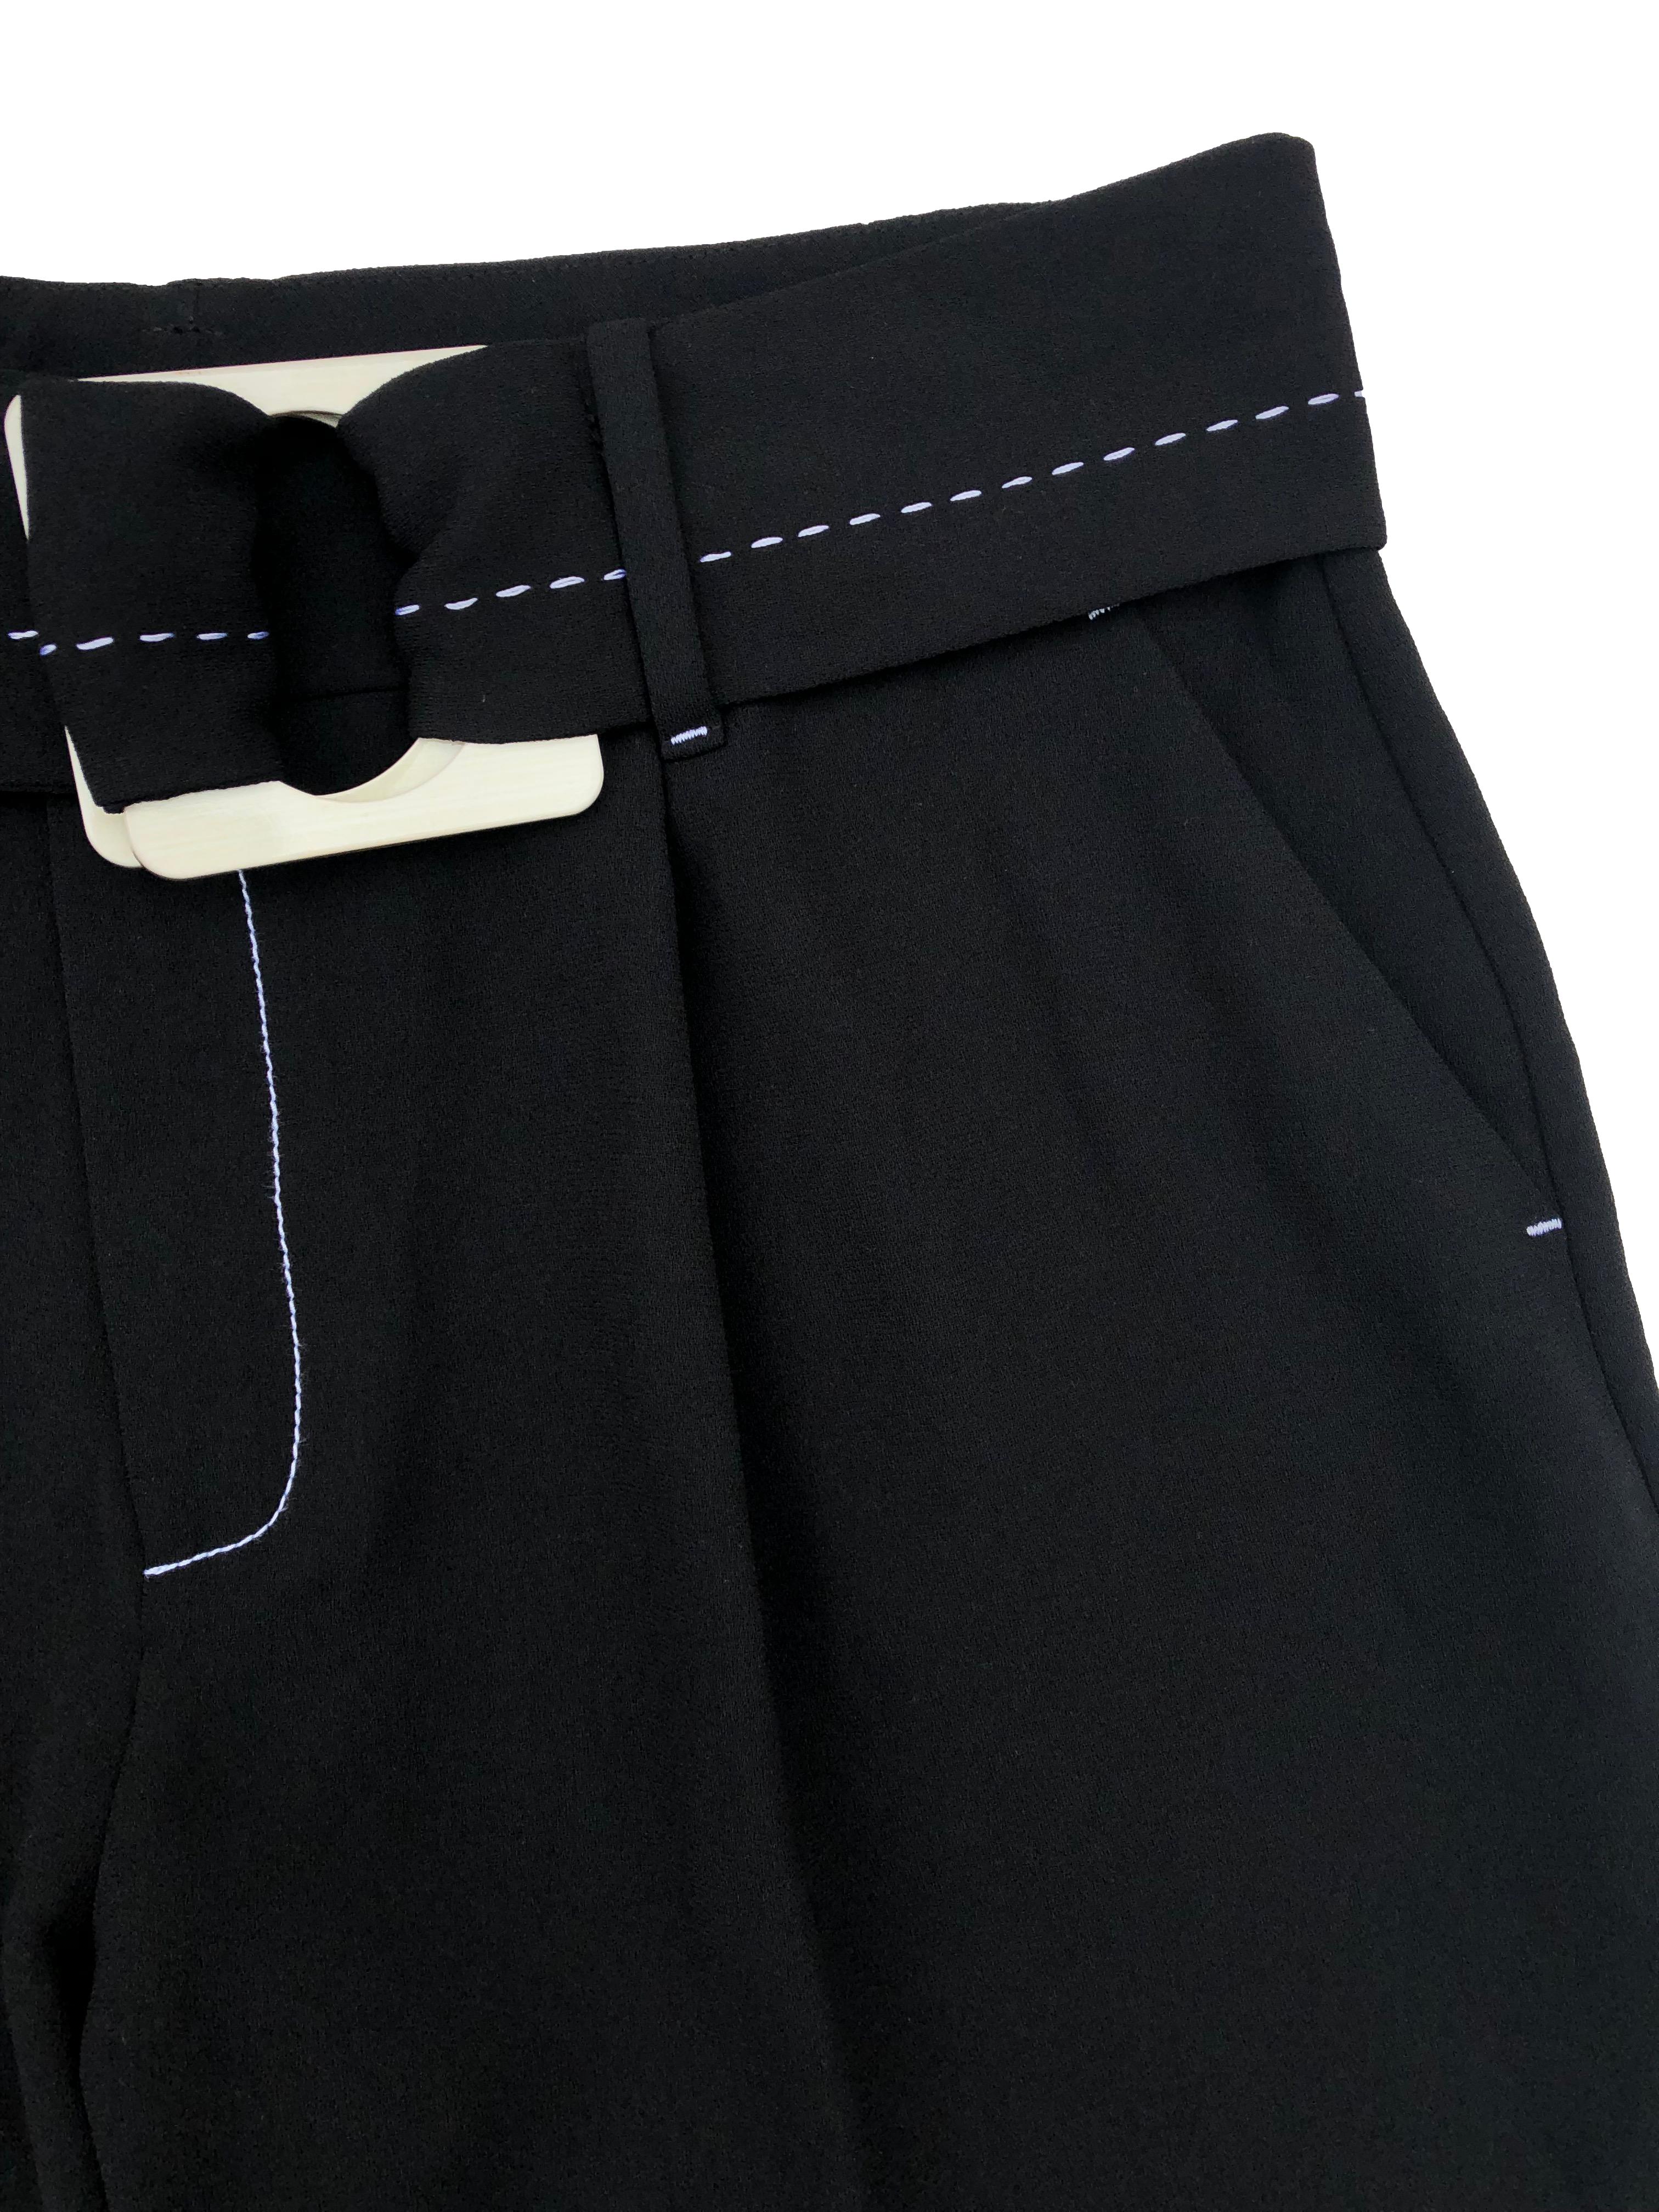 Pantalón formal Mango, con pliegues y cinturón, detalles de pespuntes en blanco, tiene bolsillos. Cintura 80cm, Tiro 30cm Largo 107cm